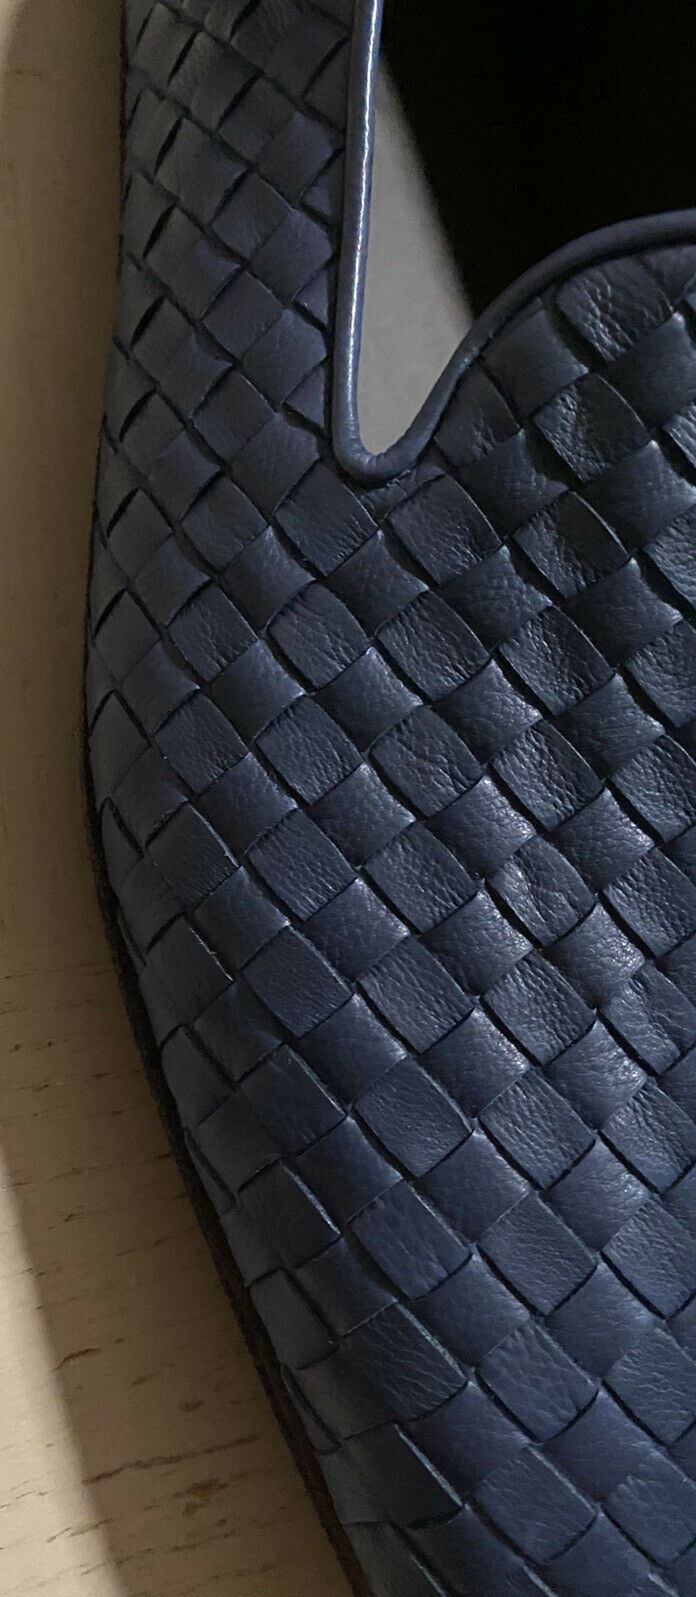 СПИ $810 Bottega Veneta Мужские кожаные лоферы Синие 11,5 США/44,5 ЕС